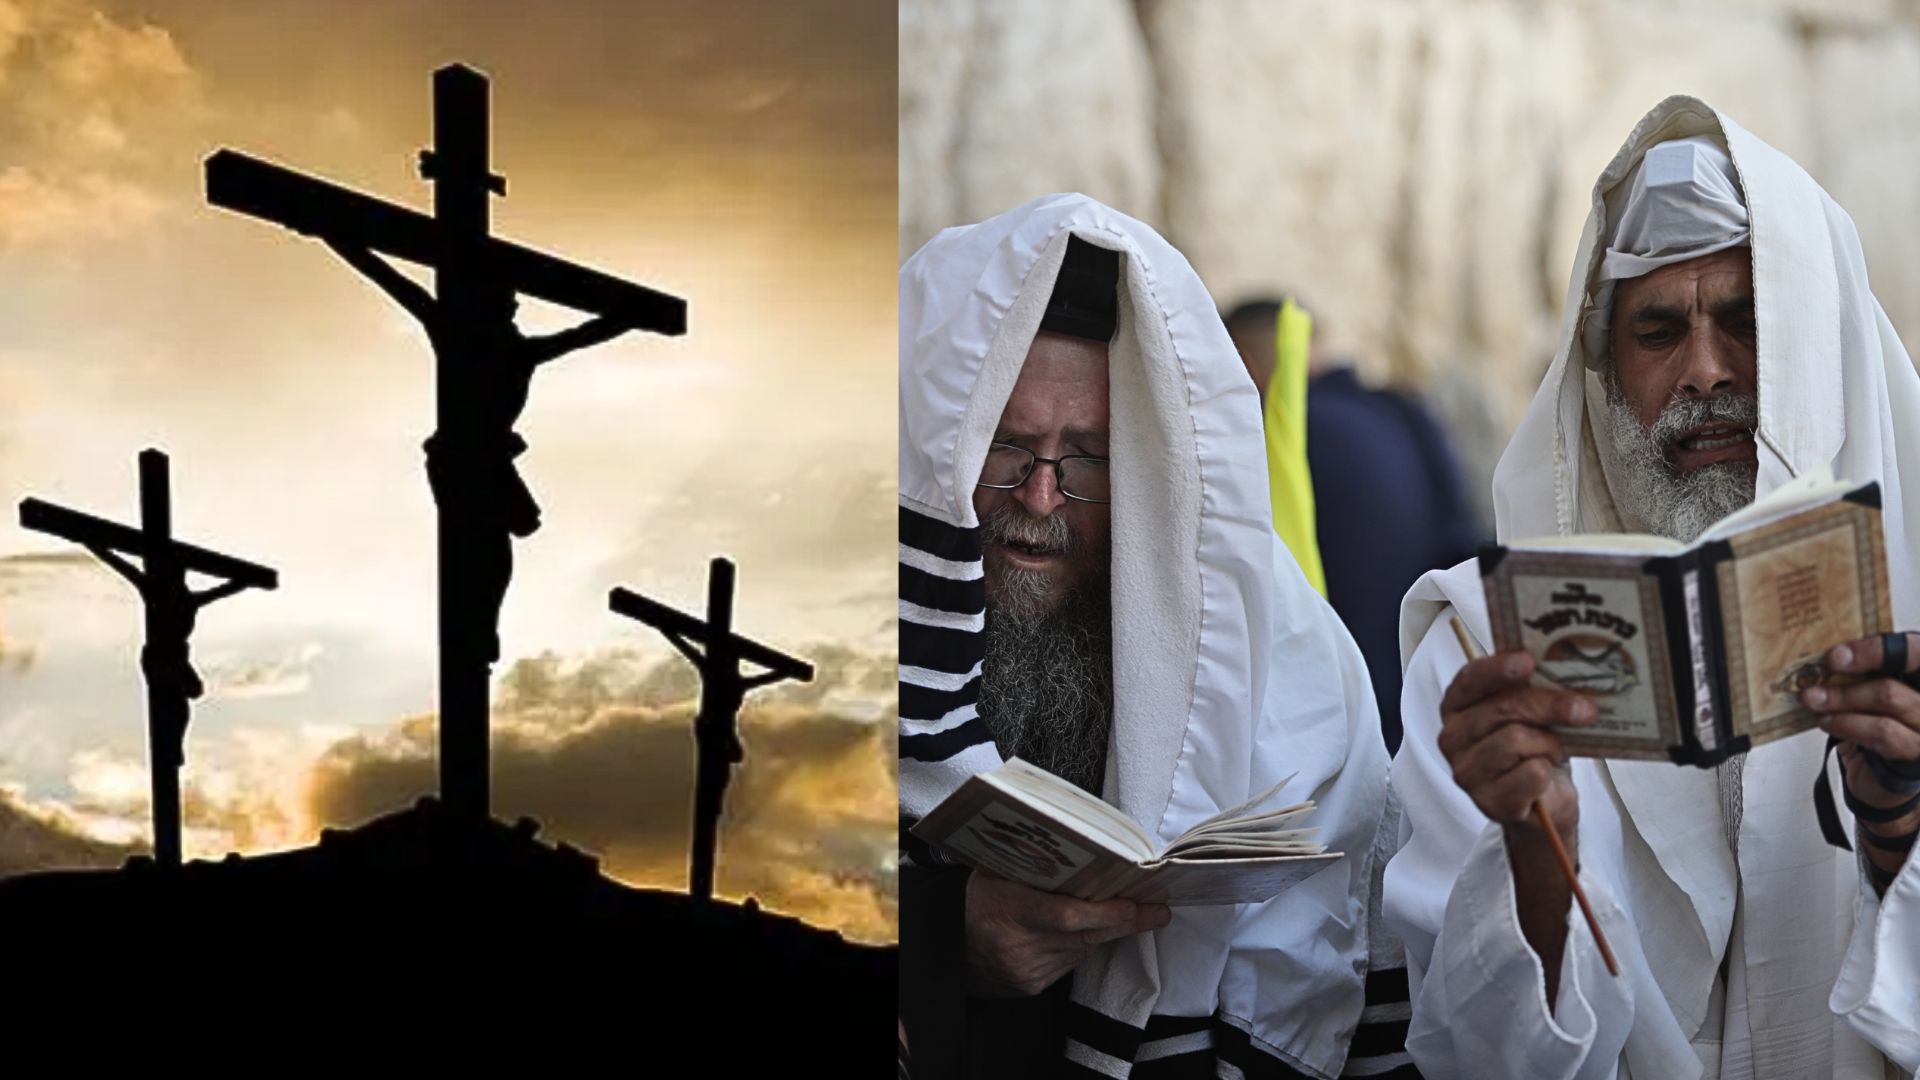 ¿El Mesías que Esperan los Judíos en esta década será el Anticristo? ¿La Cabeza del Nuevo Orden?